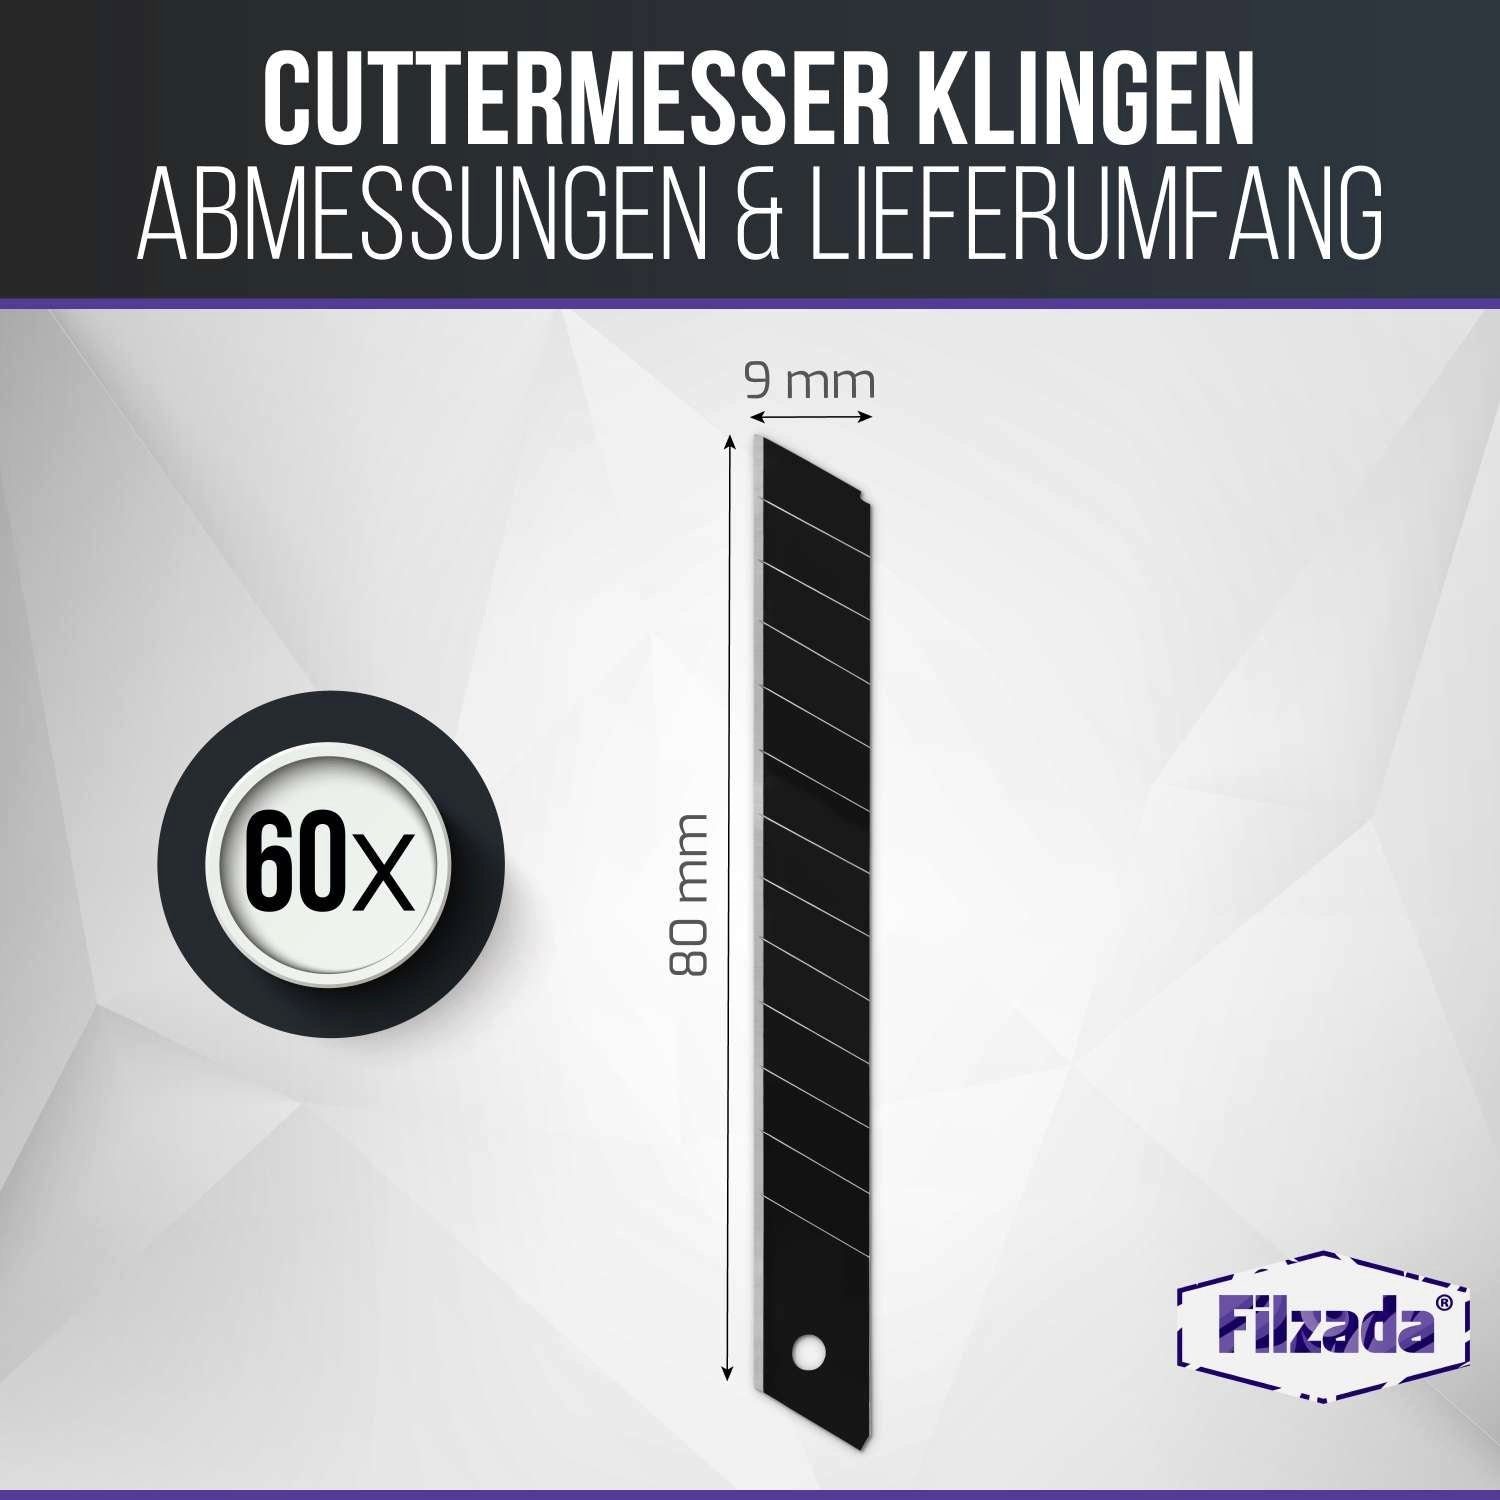 Cuttermesser Carbonstahl 60x Filzada 9mm Klingen Cuttermesser Abbrechklingen Cutterklingen